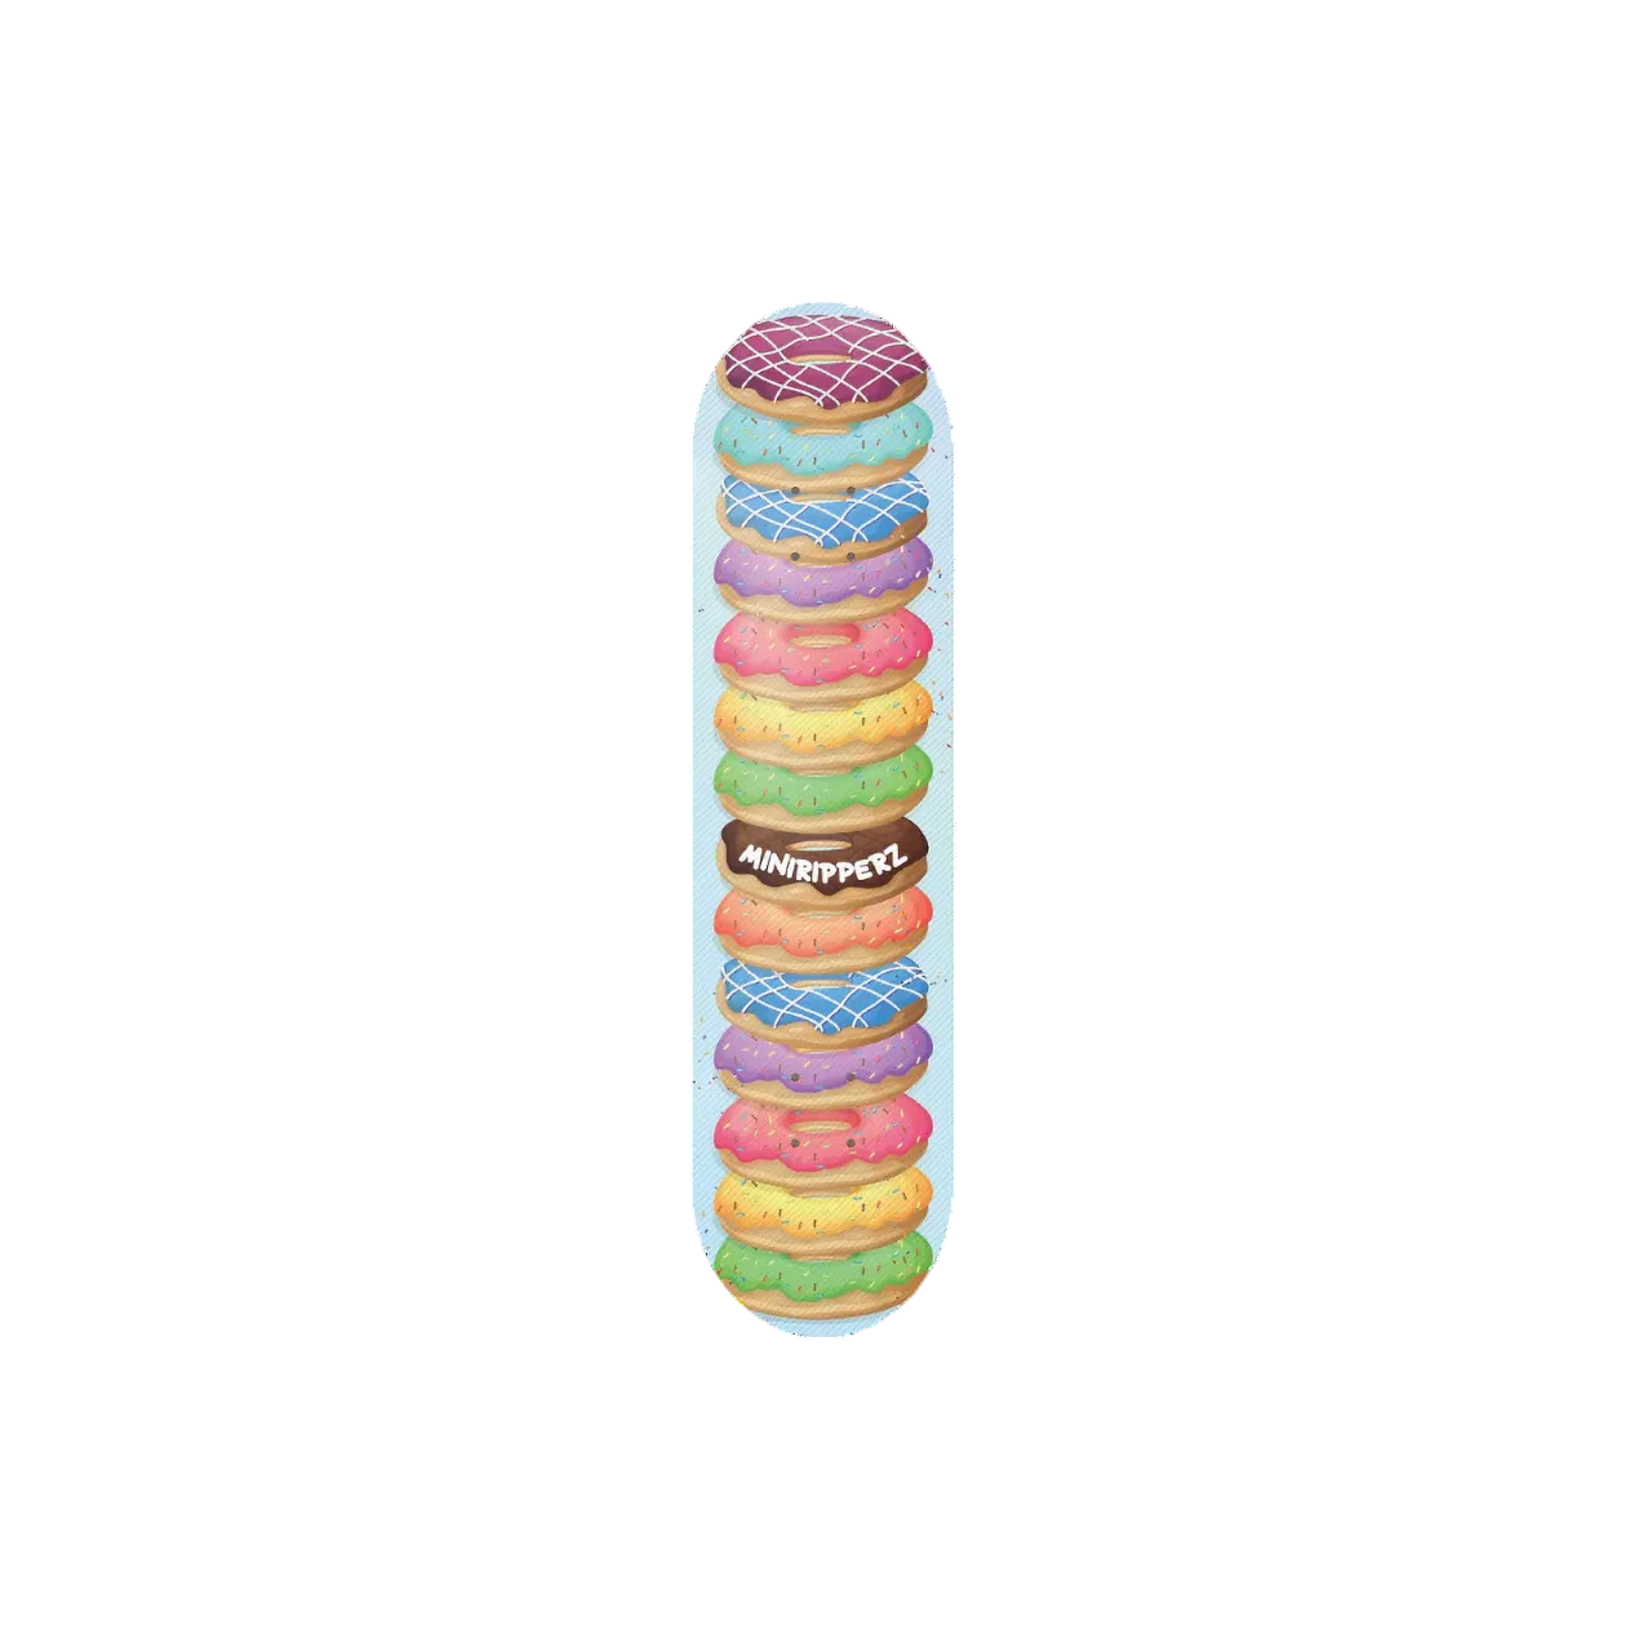 mini ripperz MiniRipperz Donut Stack Deck - 6.75"x 26.5" x 10.75"